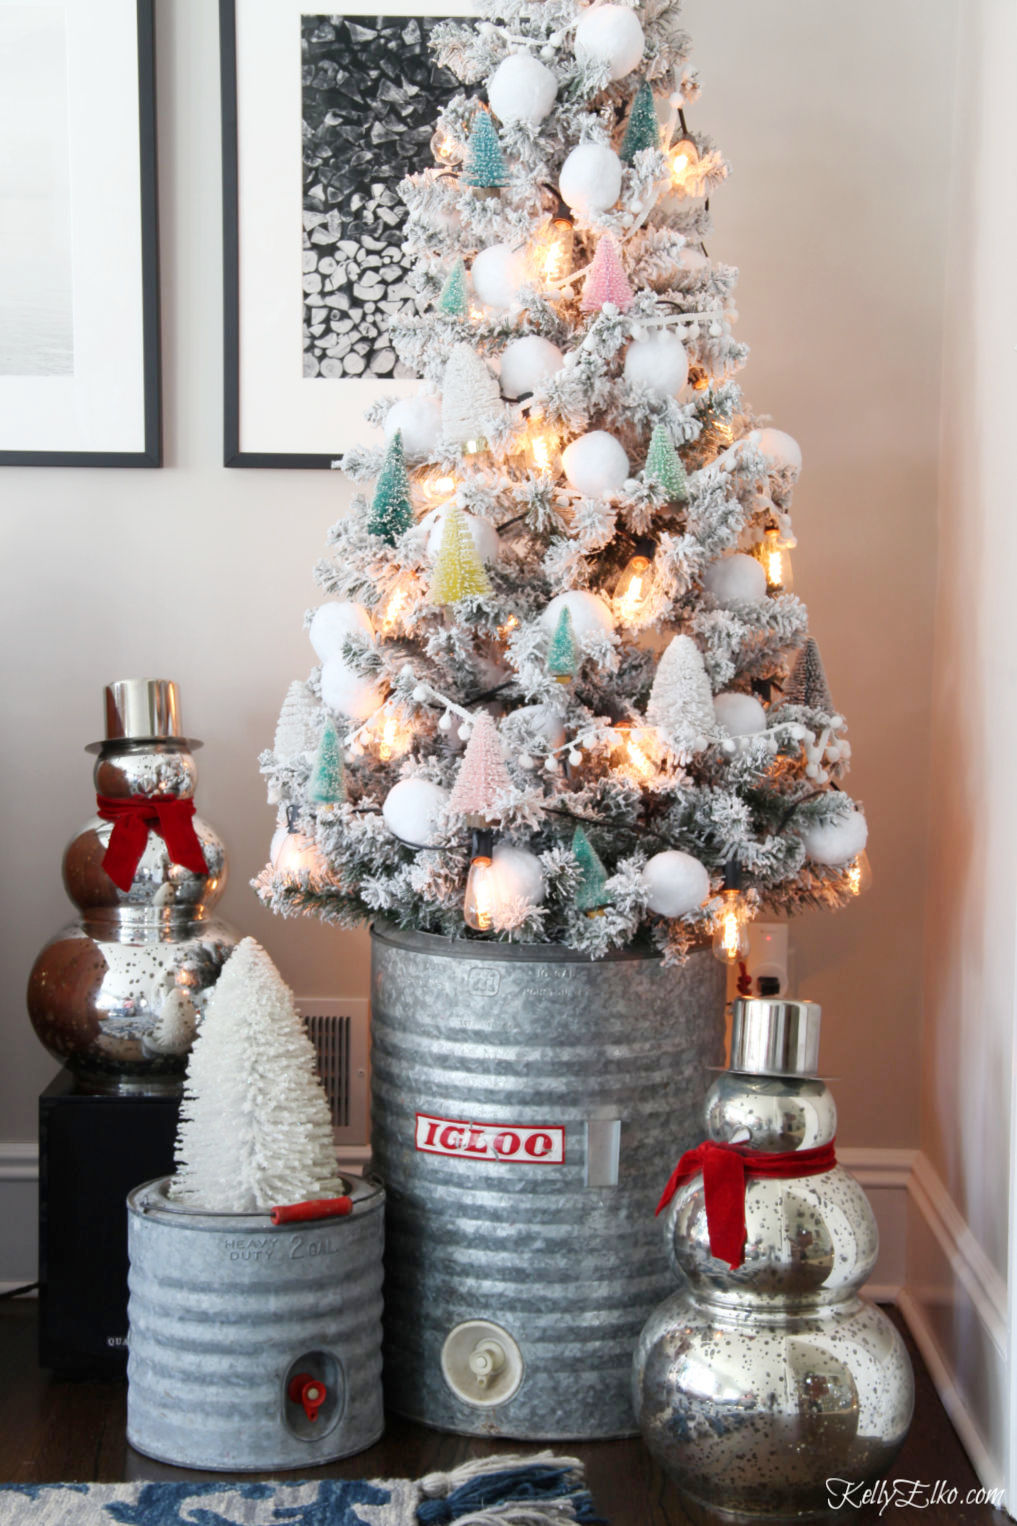 https://www.kellyelko.com/wp-content/uploads/2019/12/bottle-brush-christmas-tree-ornaments-vintage-decor-1.jpg